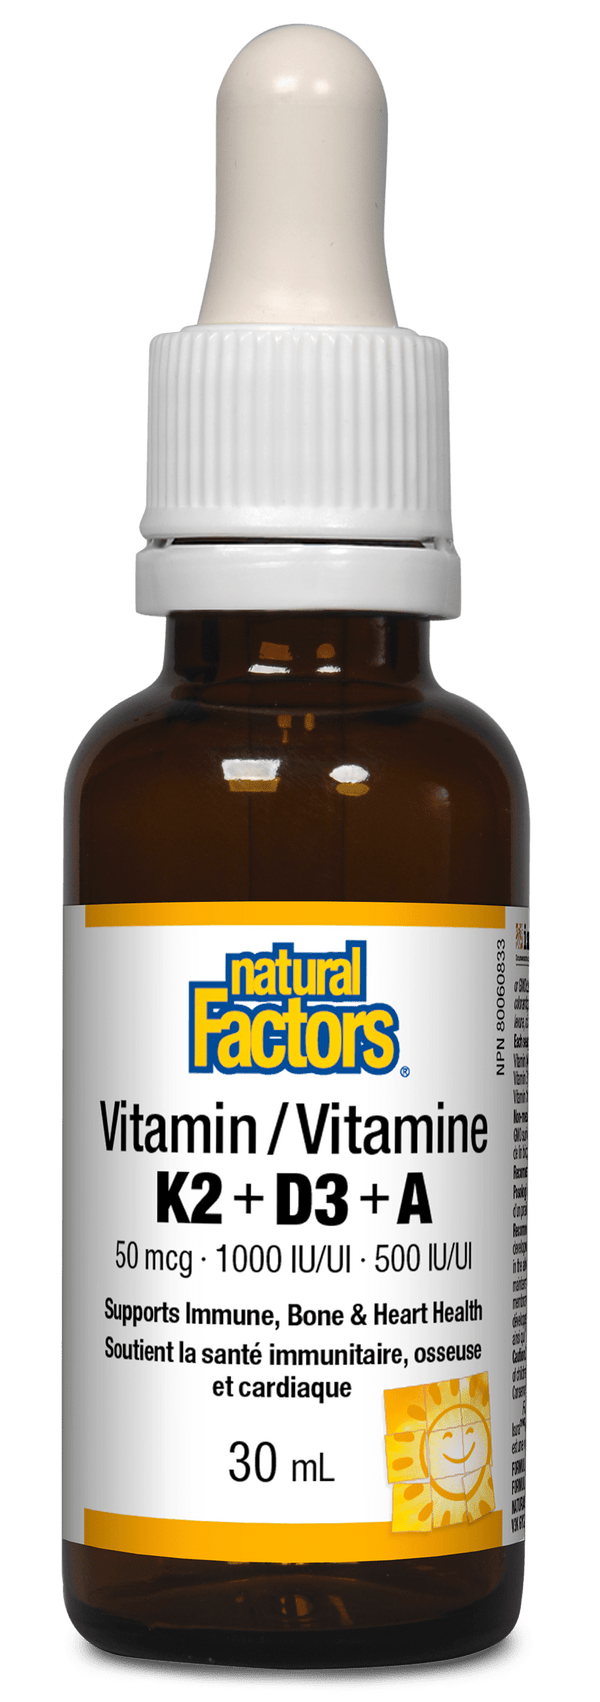 Natural Factors 비타민 K2+D3+A 50mcg · 1000IU · 500IU